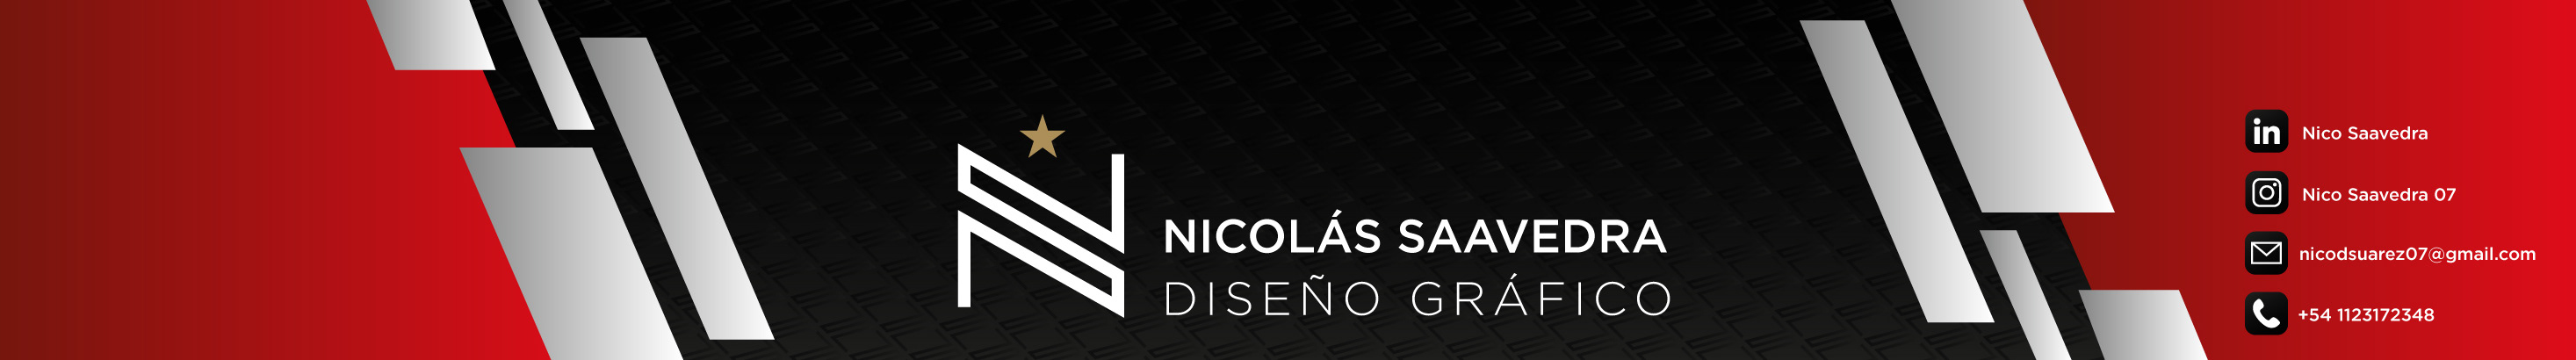 Banner profilu uživatele Nico Saavedra 07